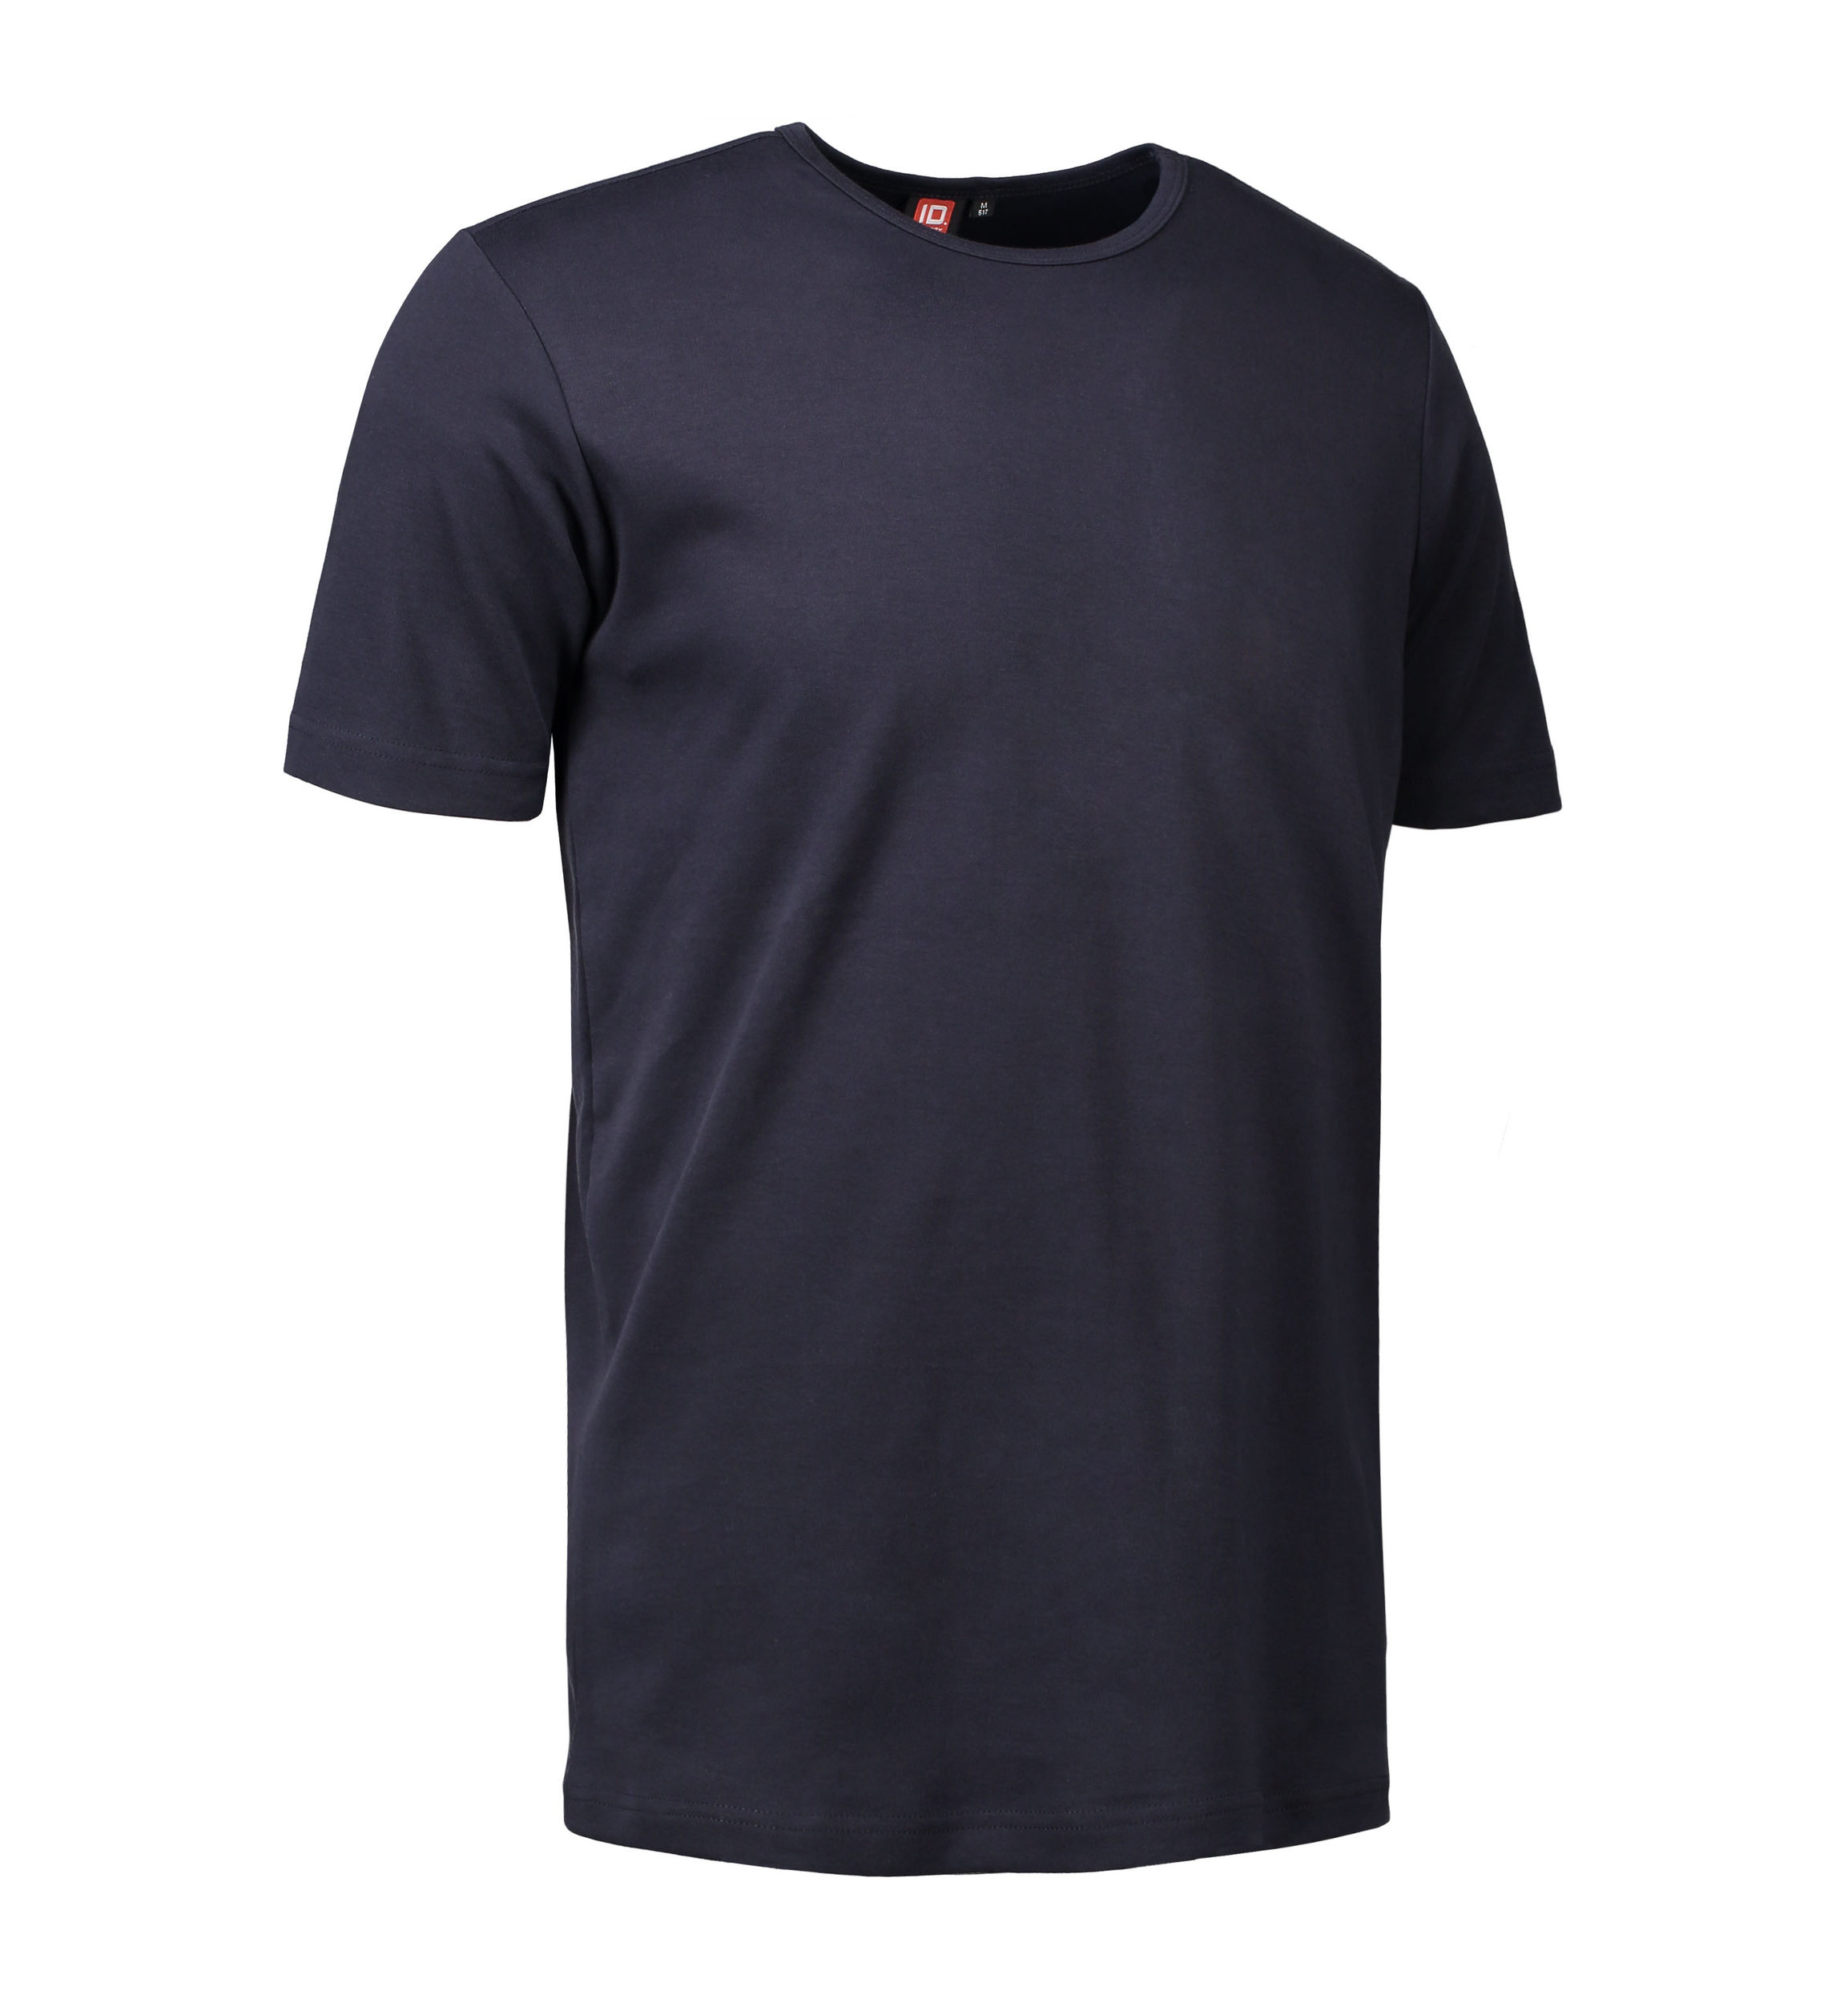 Billede af Navy t-shirt med rund hals til mænd - XL hos Sygeplejebutikken.dk